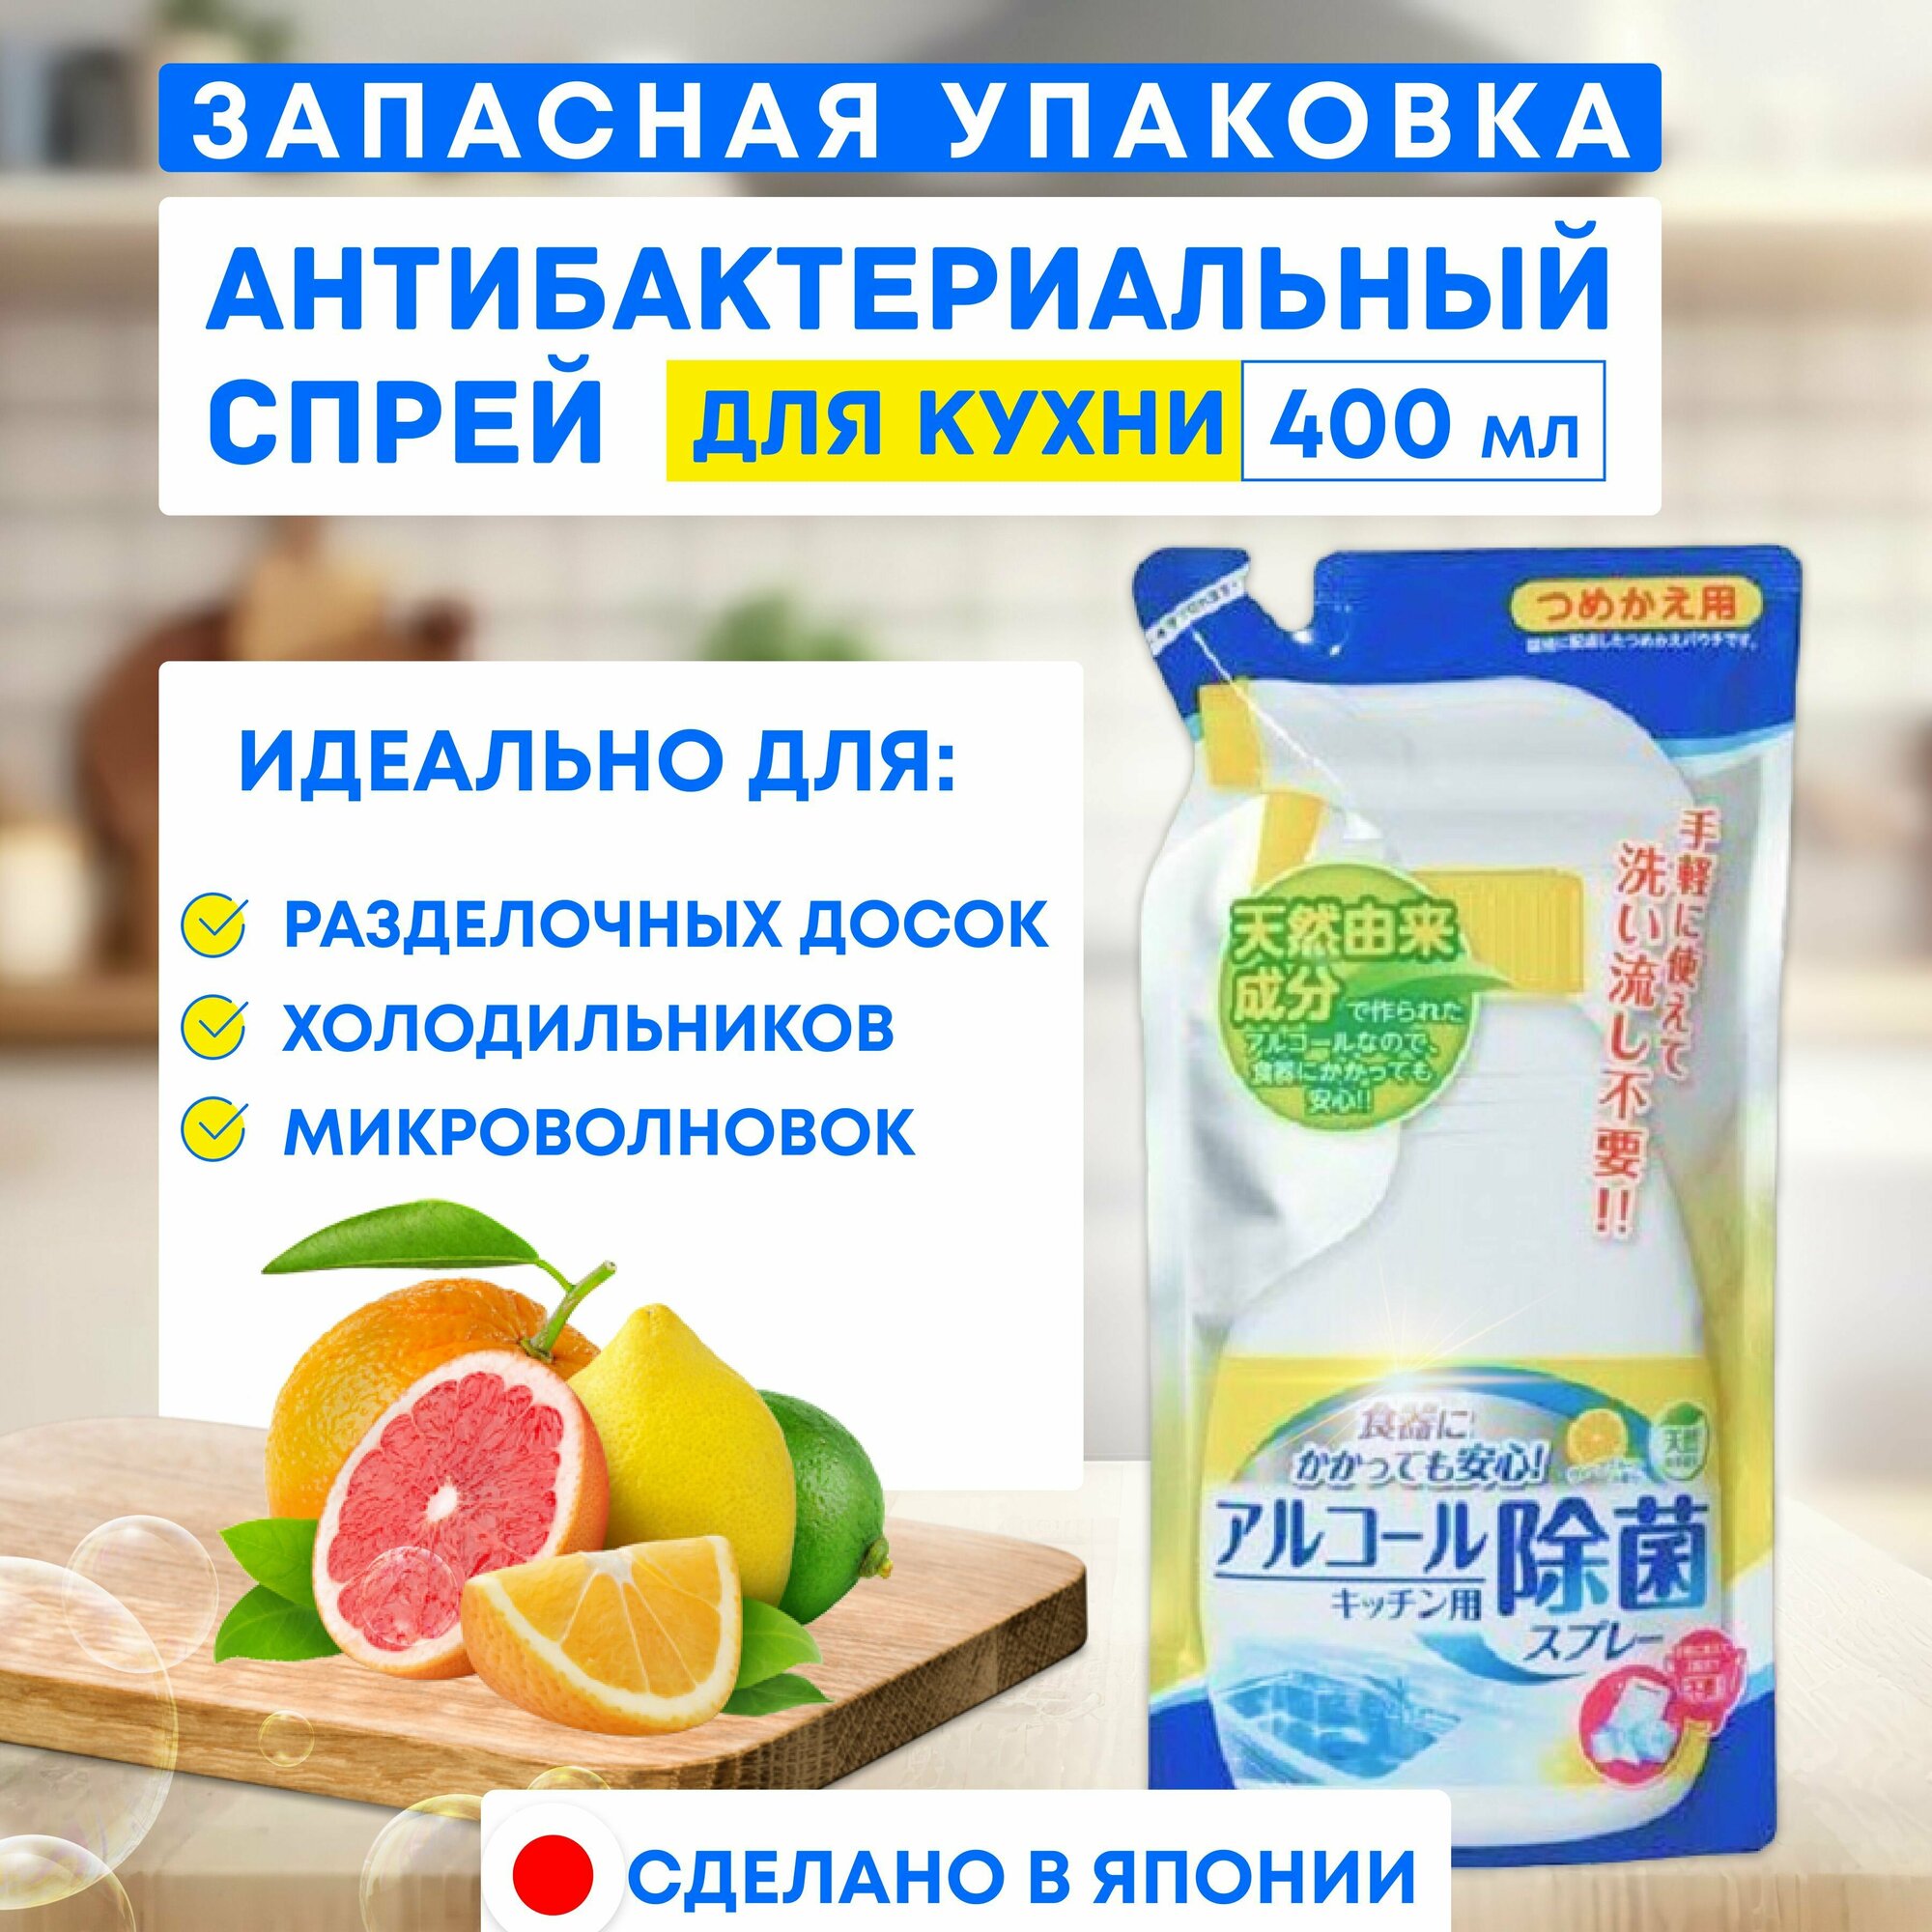 Mitsuei Спрей для кухни с антибактериальным эффектом, для разделочных досок, холодильников, микроволновок, 350 мл, запасная мягкая упаковка, Япония